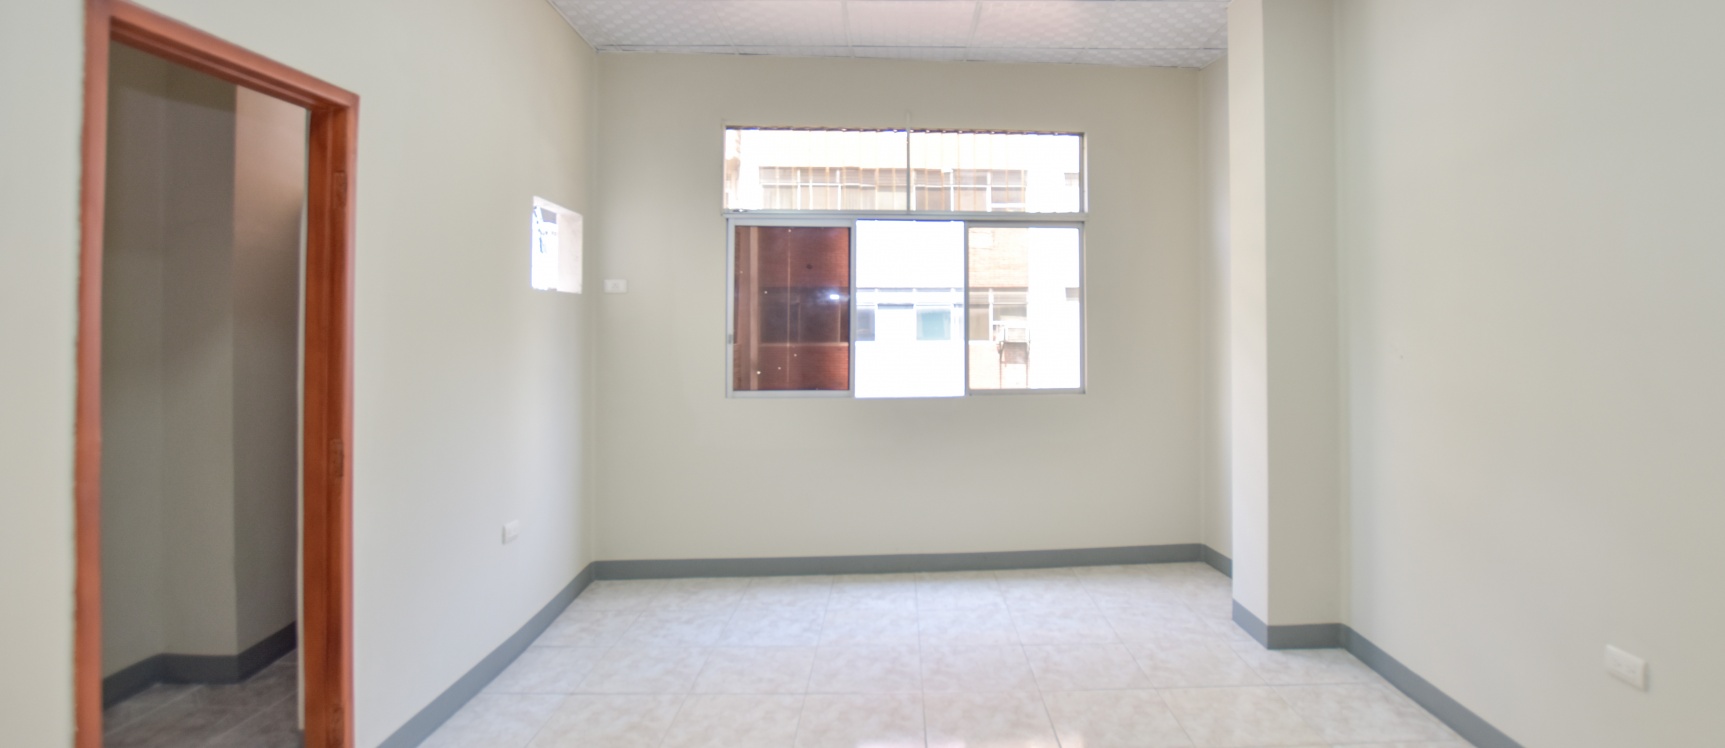 GeoBienes - Alquiler de oficina en el centro de Guayaquil - Plusvalia Guayaquil Casas de venta y alquiler Inmobiliaria Ecuador